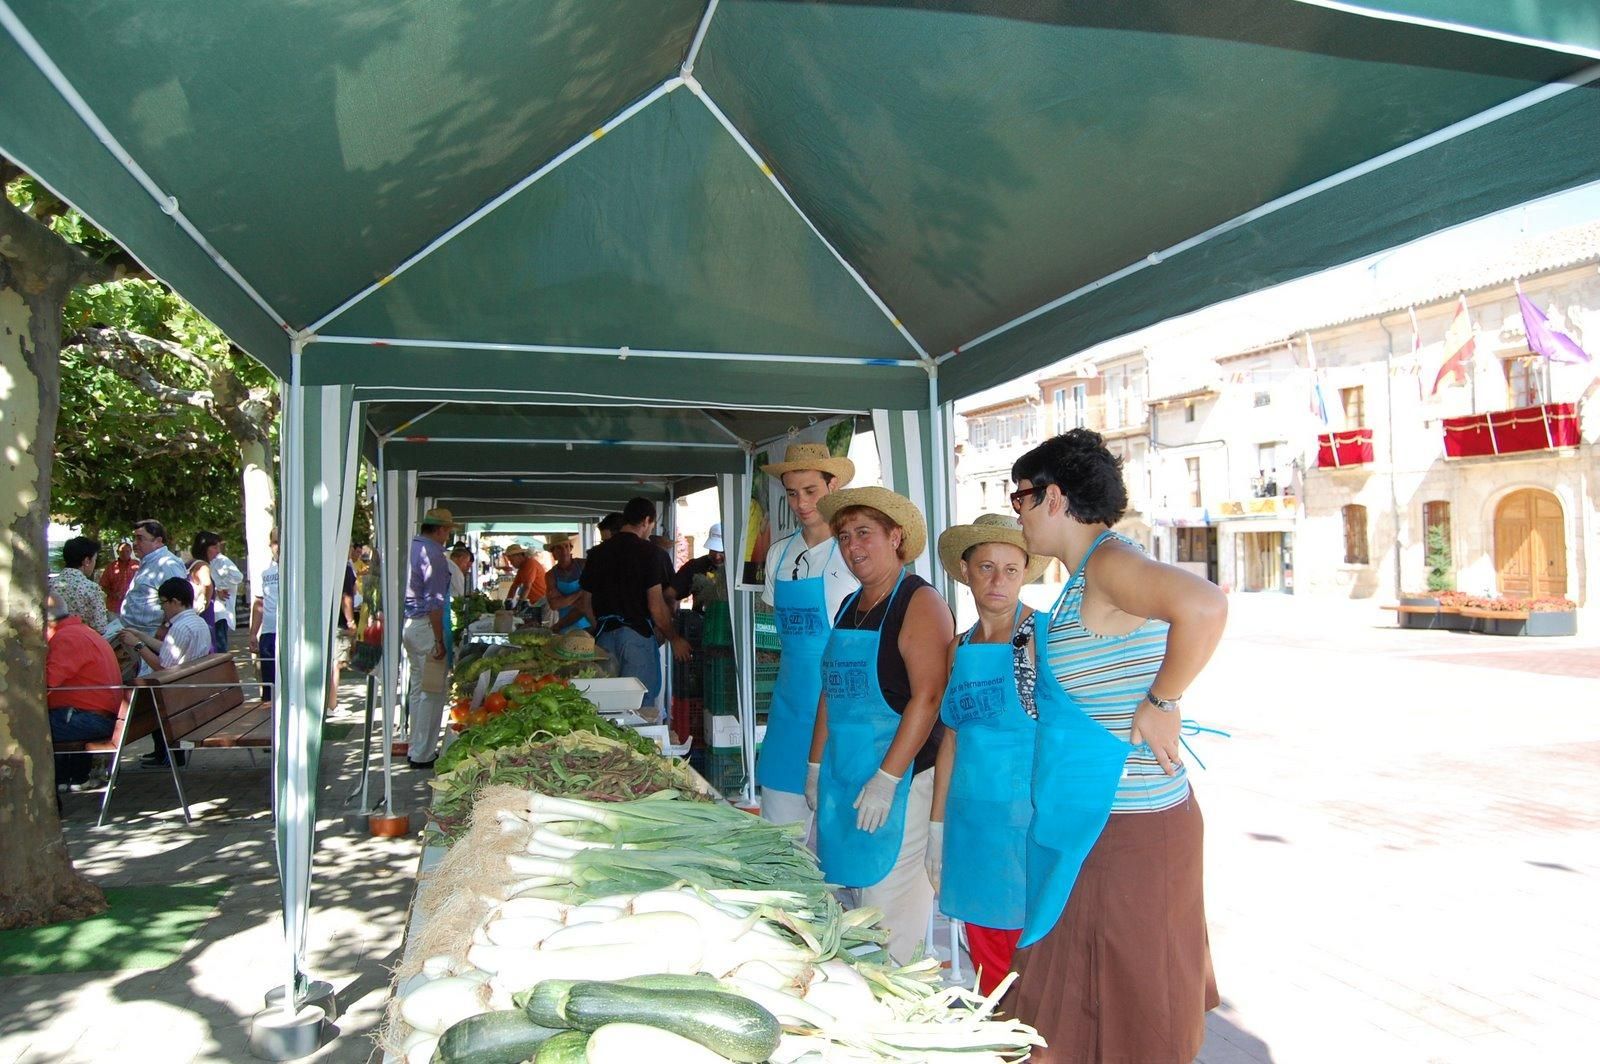 Feria de la Huerta y del producto ecológico